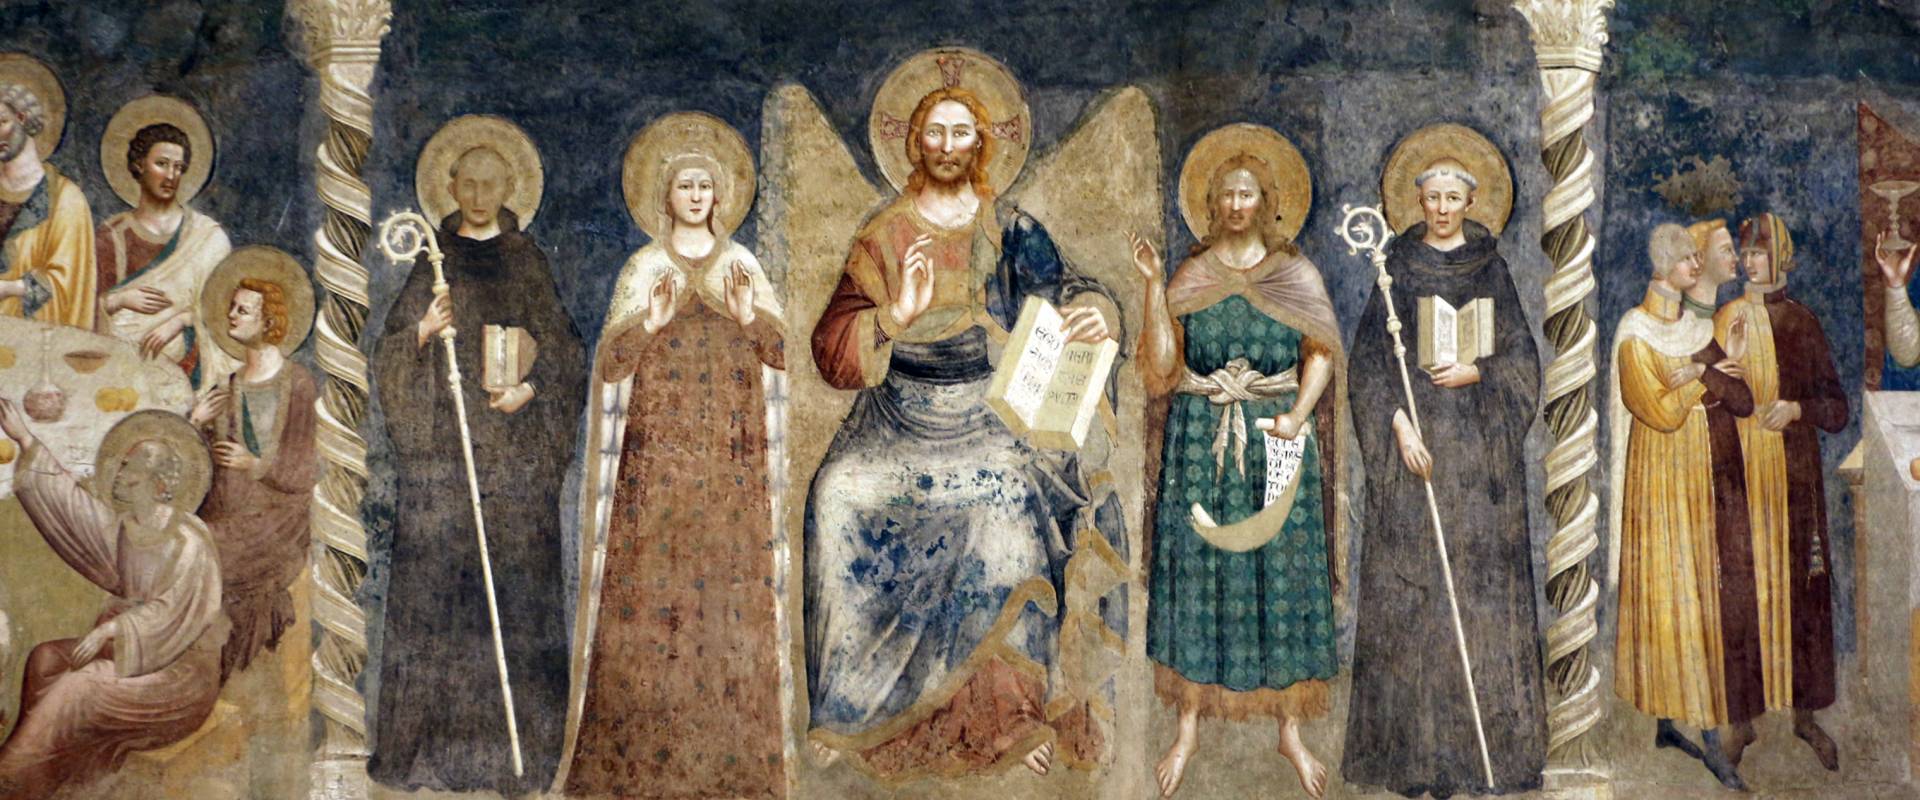 Pomposa, abbazia, refettorio, affreschi giotteschi riminesi del 1316-20, deesis 01 foto di Sailko